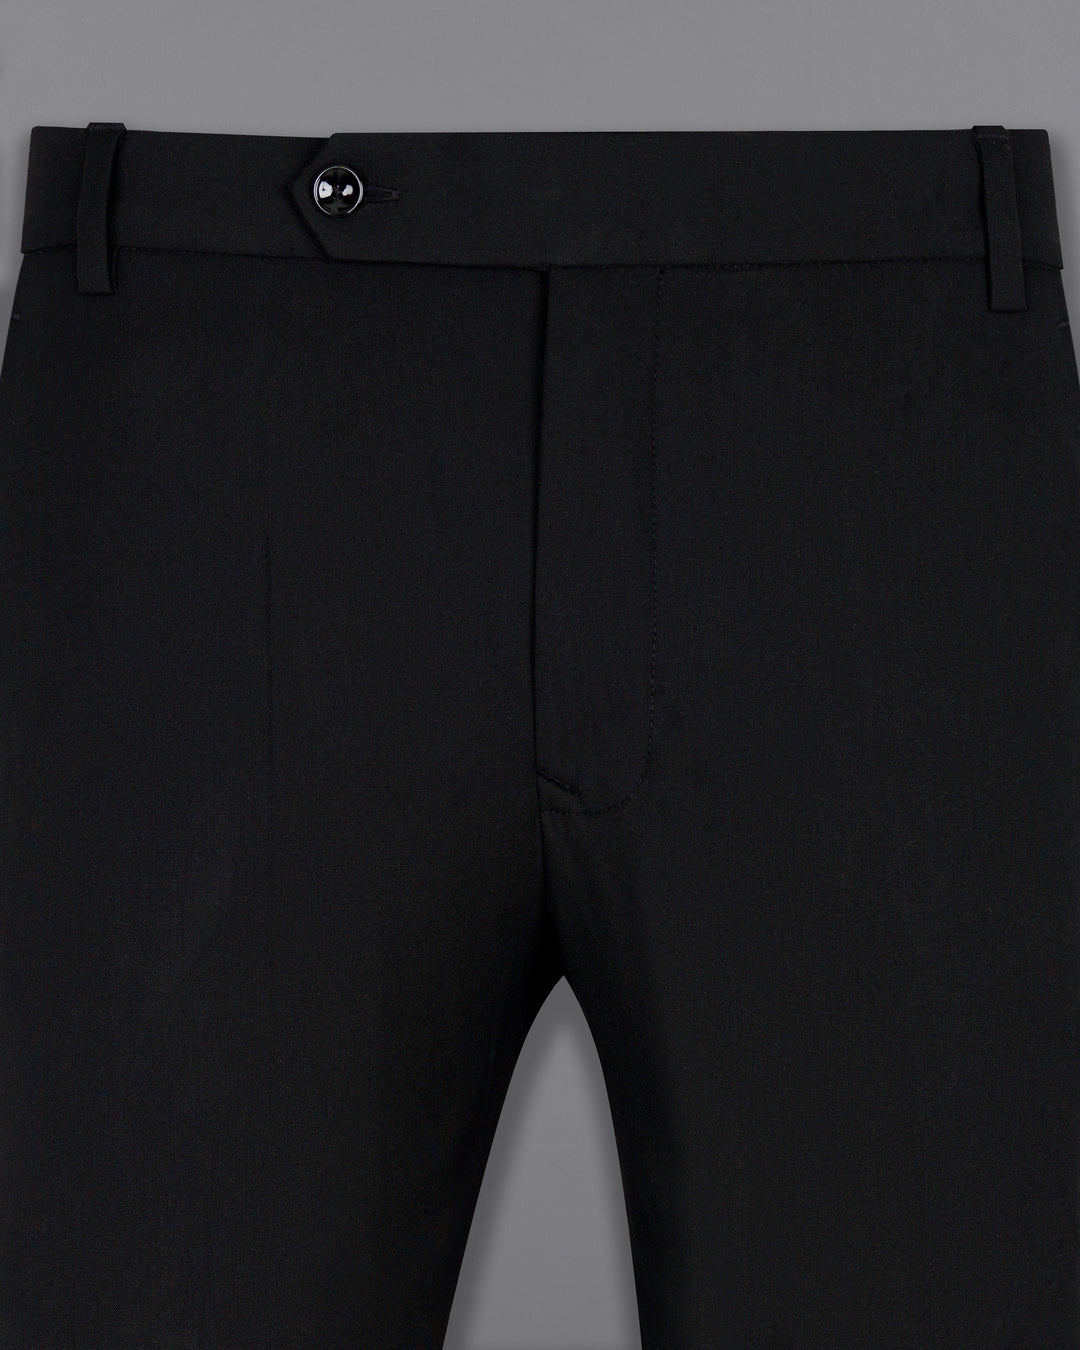 Wool-blend trousers Slim Fit - Dark grey/Checked - Men | H&M